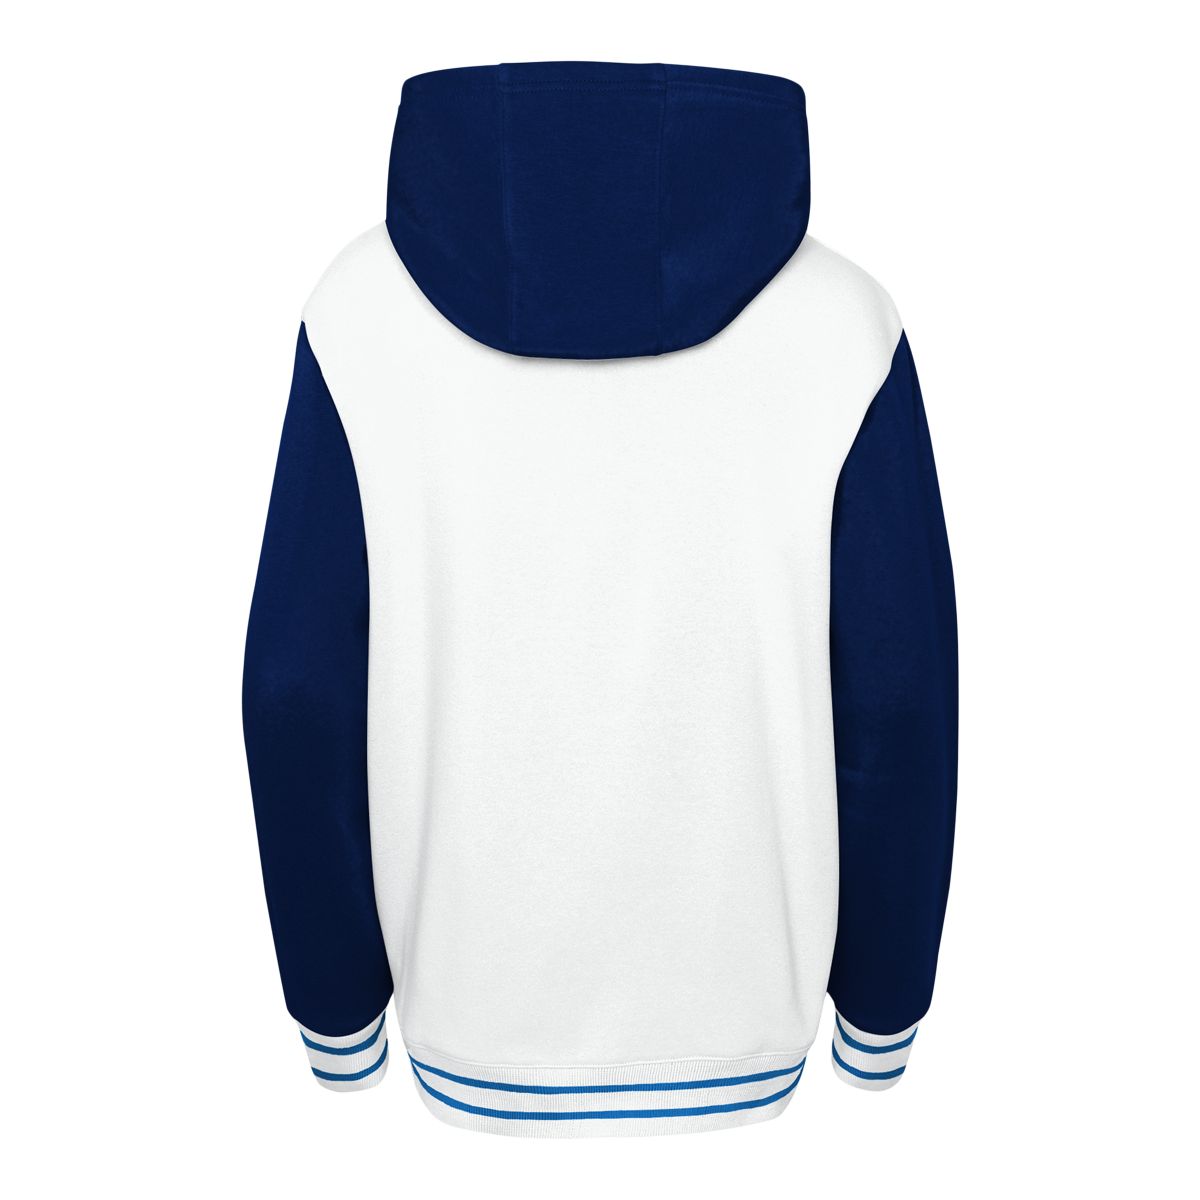 Winnipeg Jets Blue and White Varsity Two-Tone Jacket